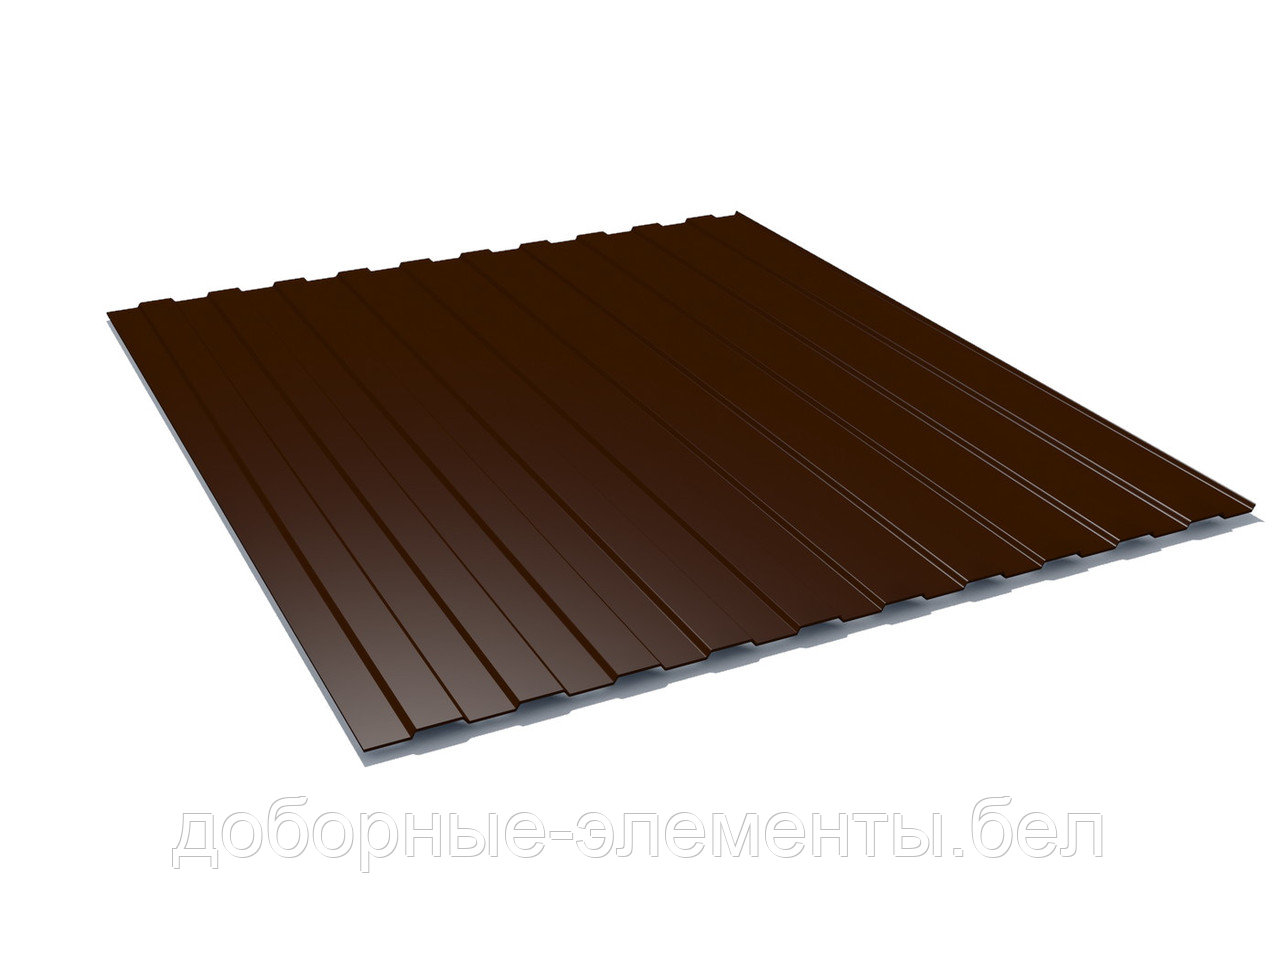 Профлист С8 для забора 1,45 м (шоколадно-коричневый), фото 1